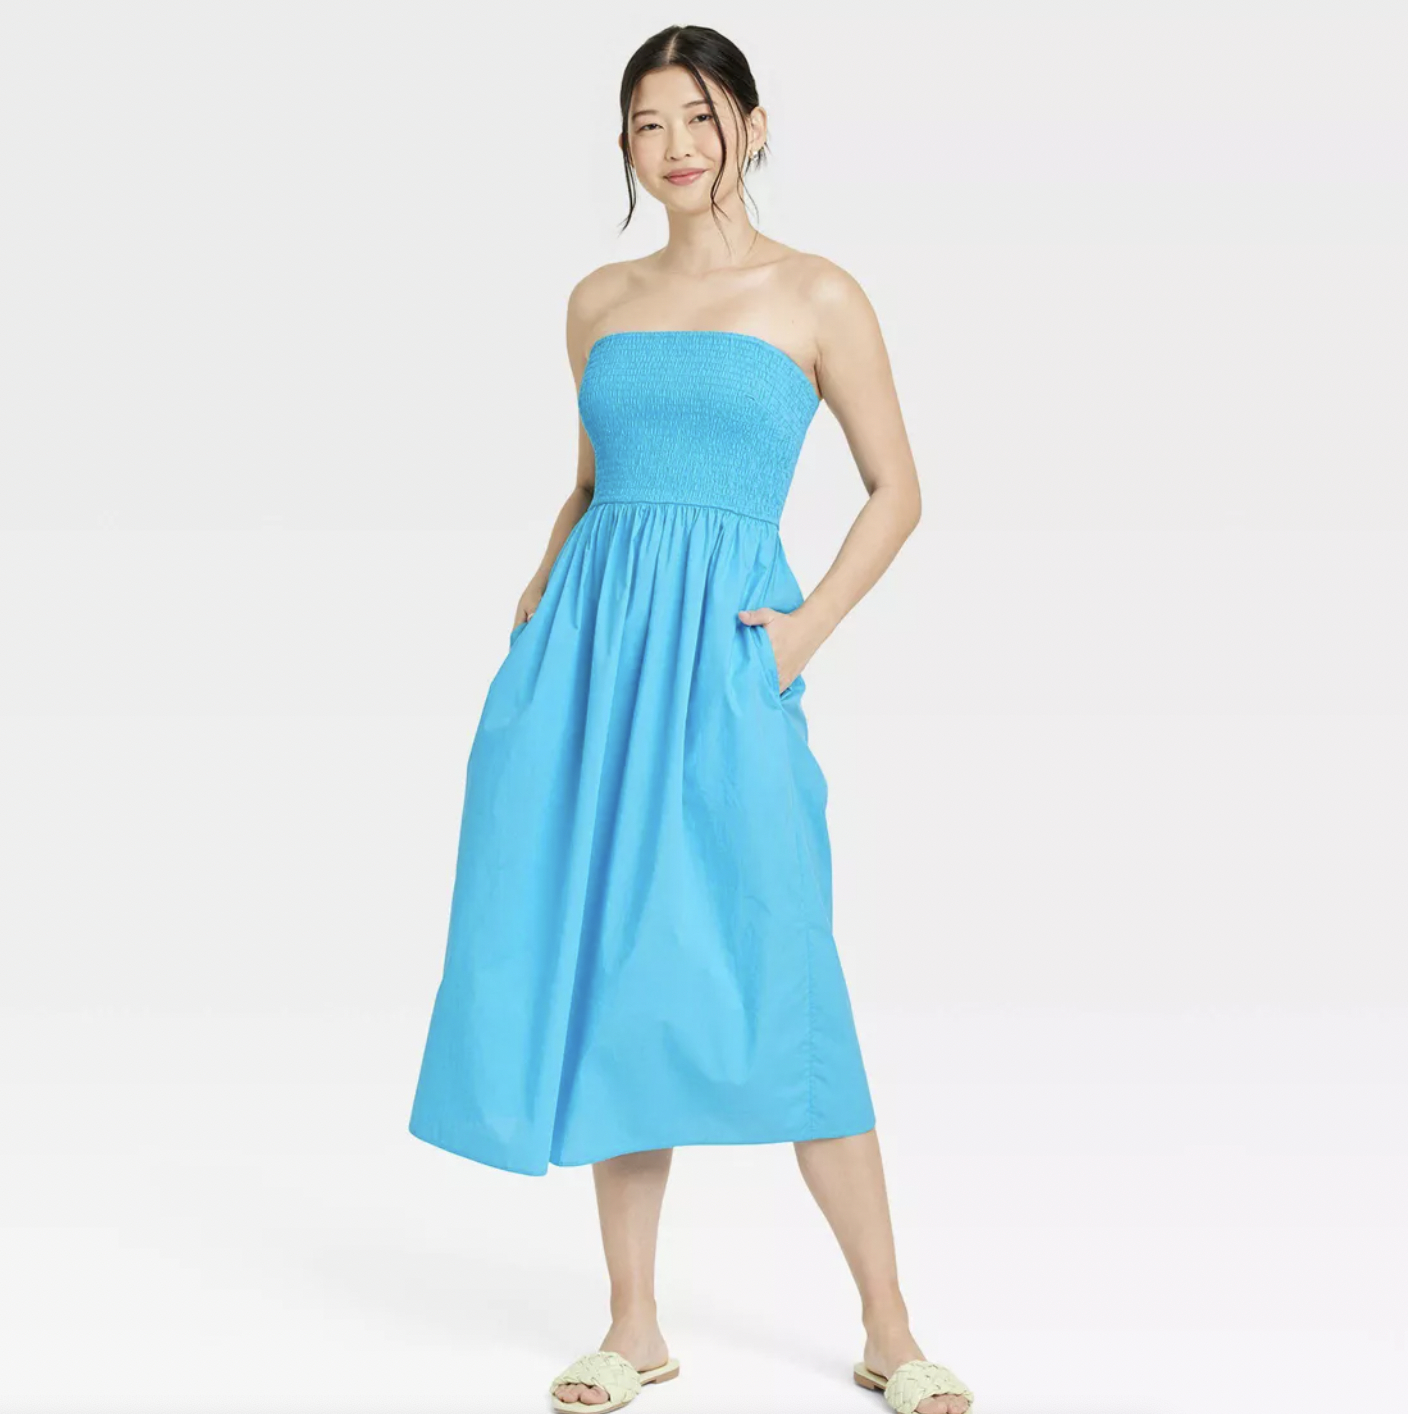 a model wearing the dress in blue